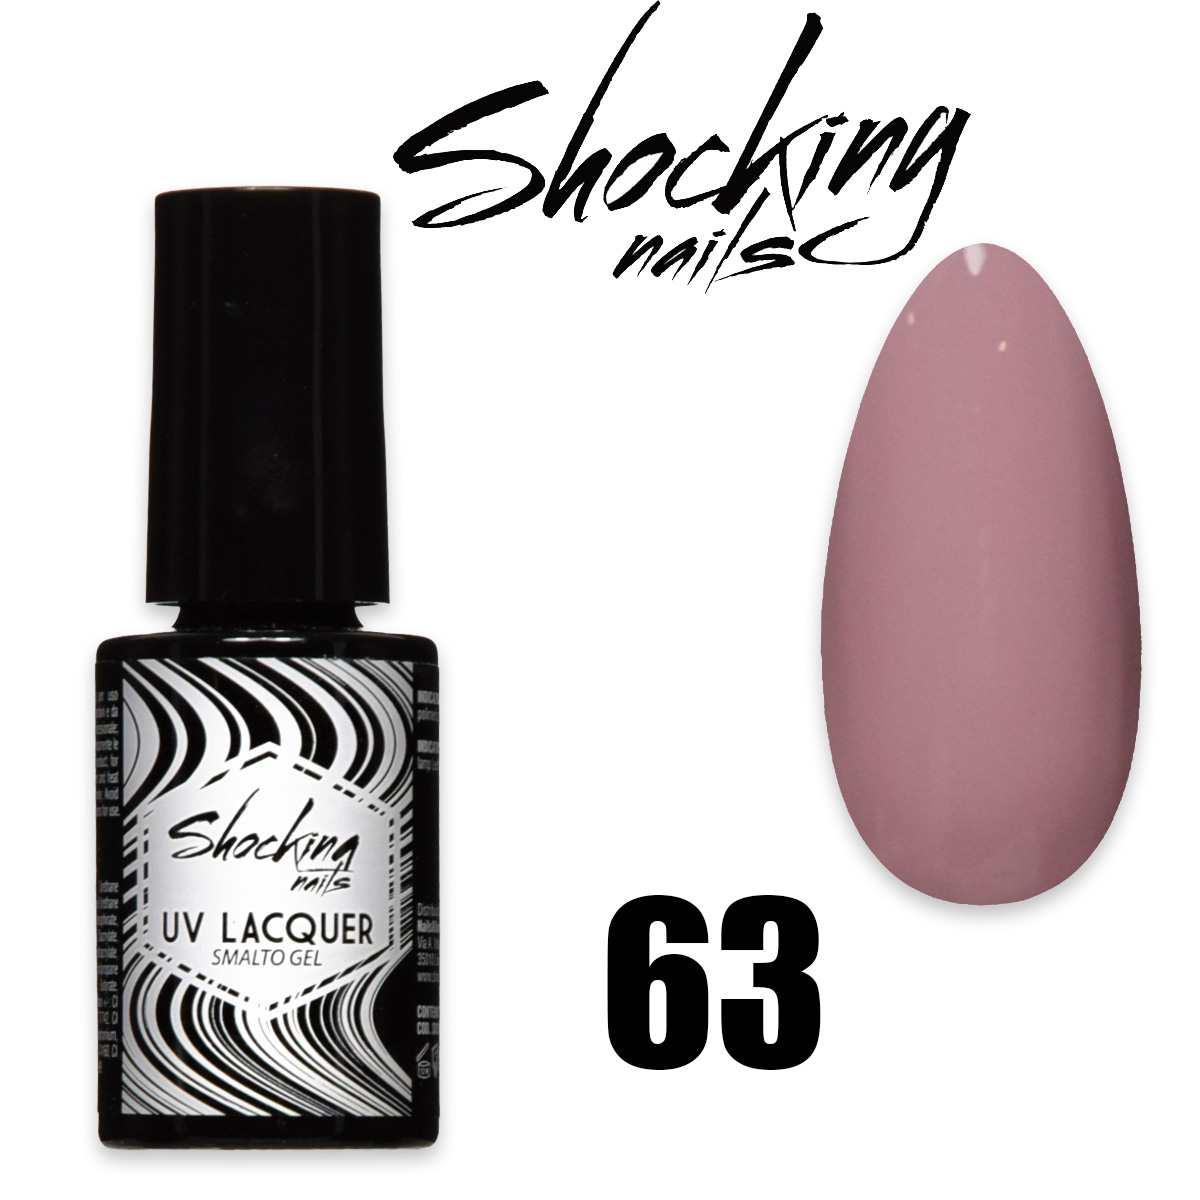 Shocking nails uv lacquer 63 smalto semipermanente gel